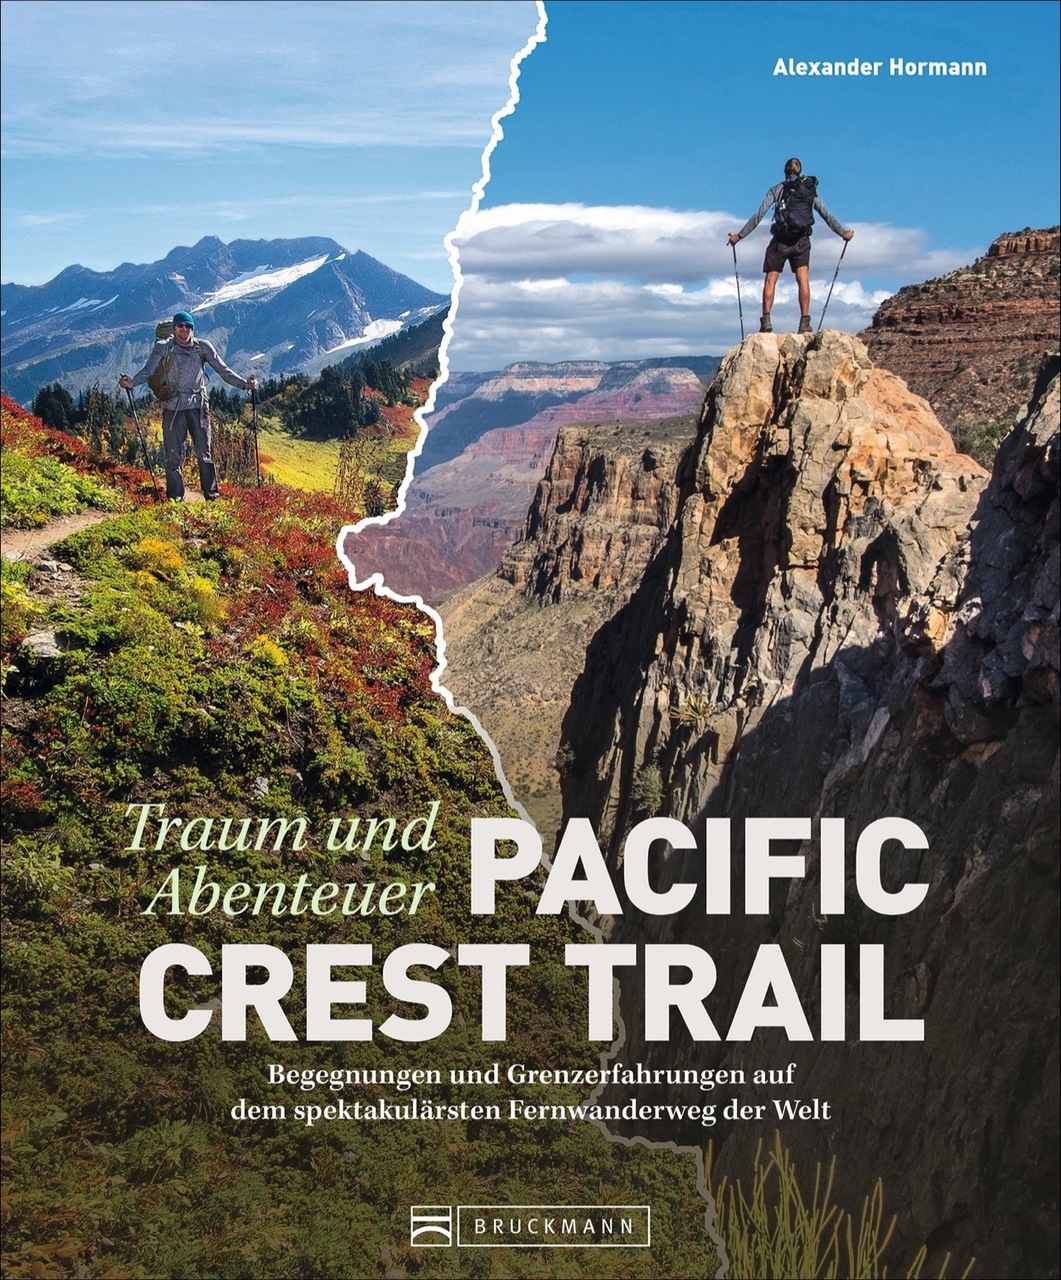 Online bestellen: Fotoboek Traum und Abenteuer Pacific Crest Trail | Bruckmann Verlag